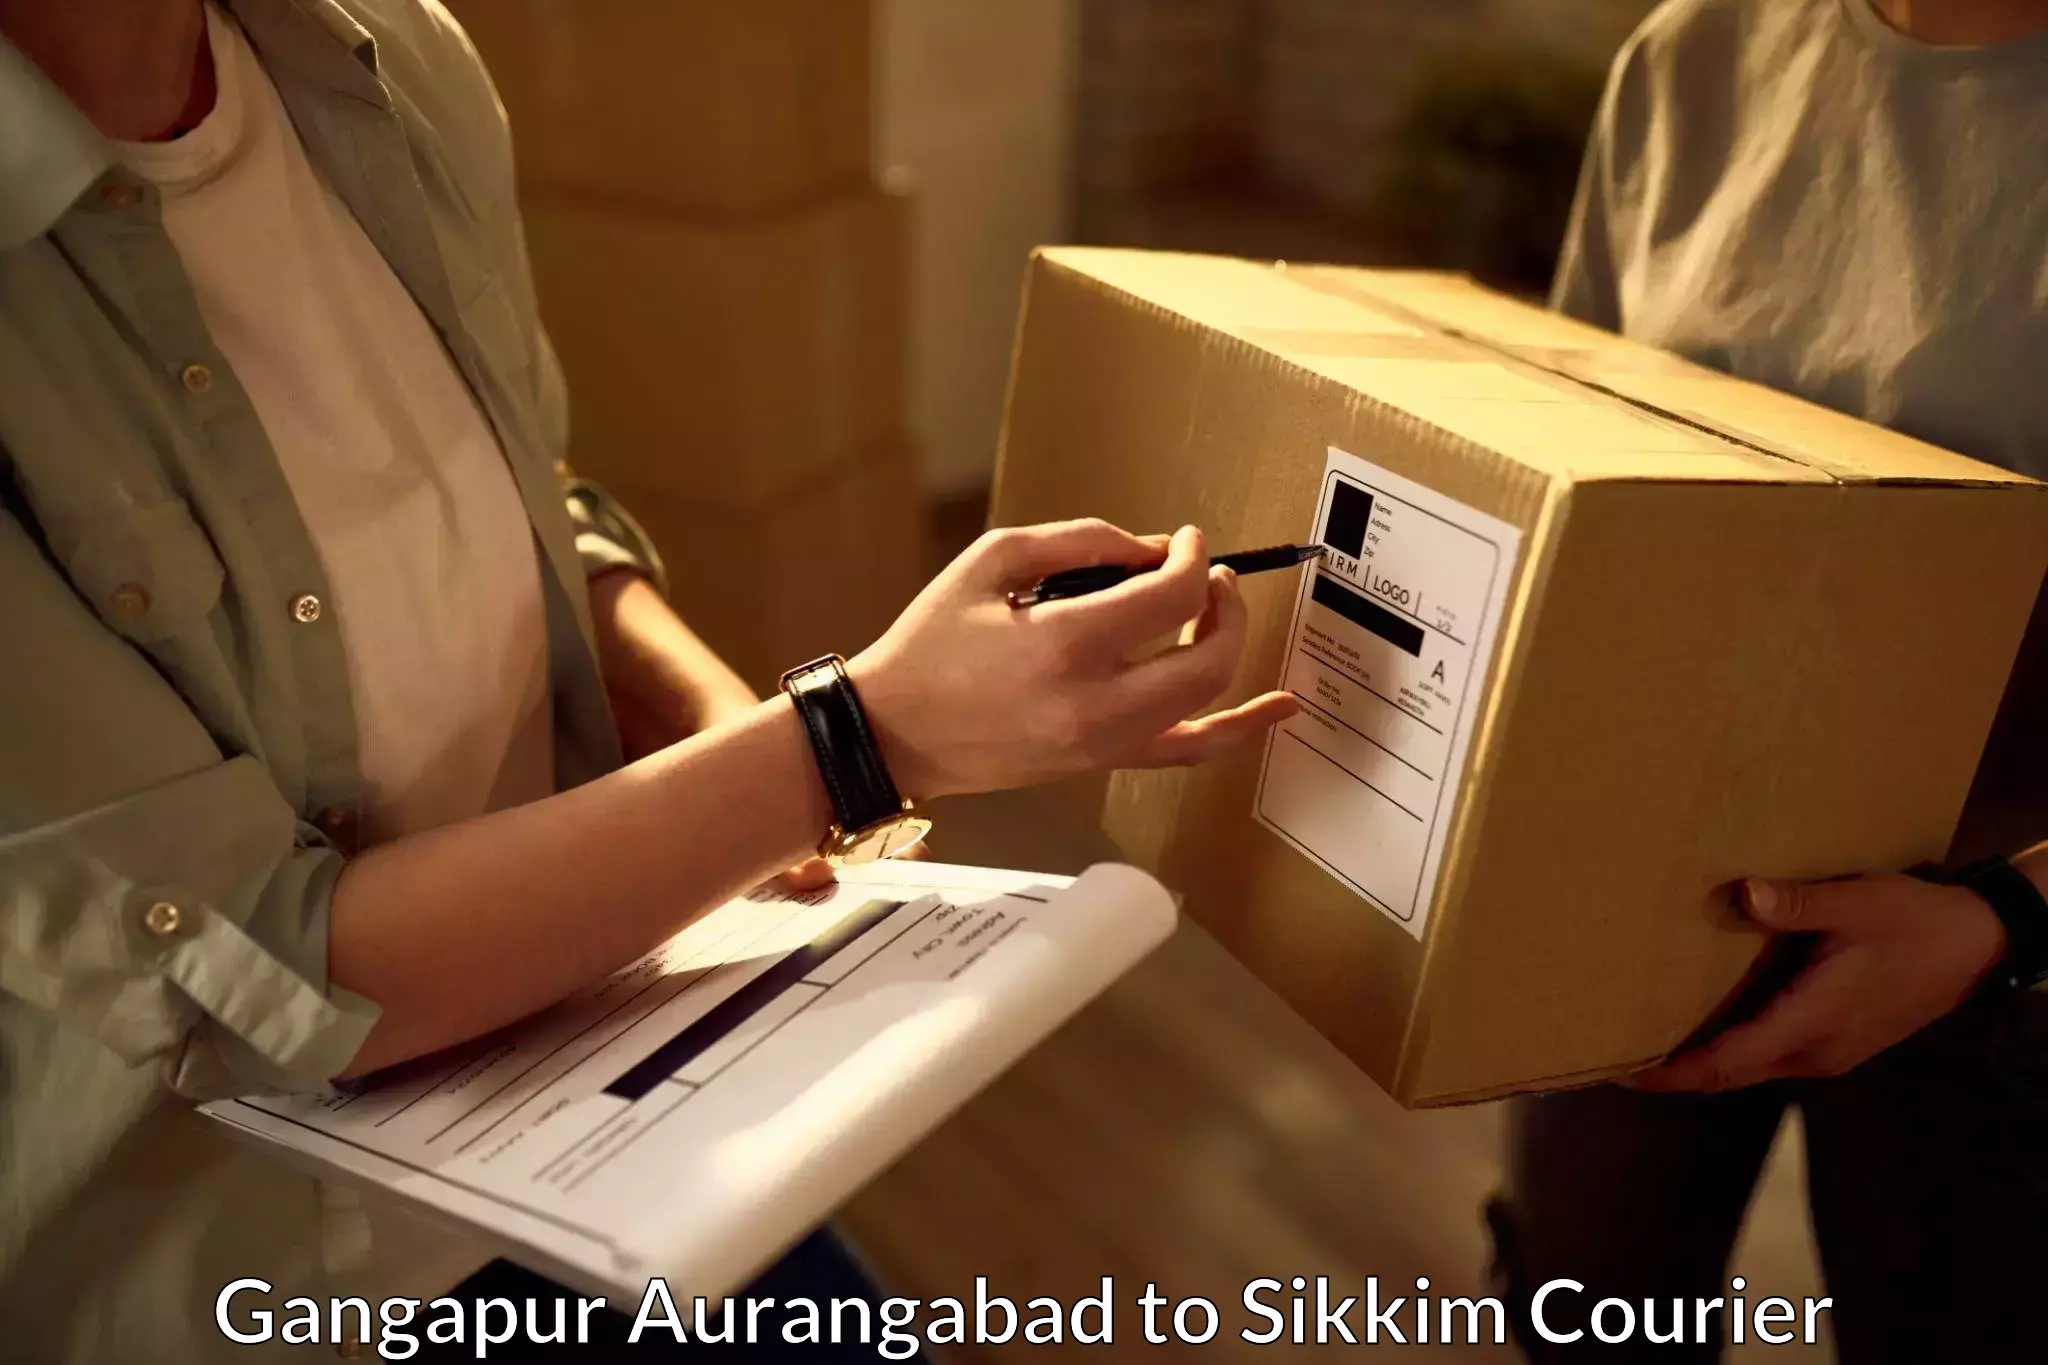 Efficient cargo handling Gangapur Aurangabad to Sikkim